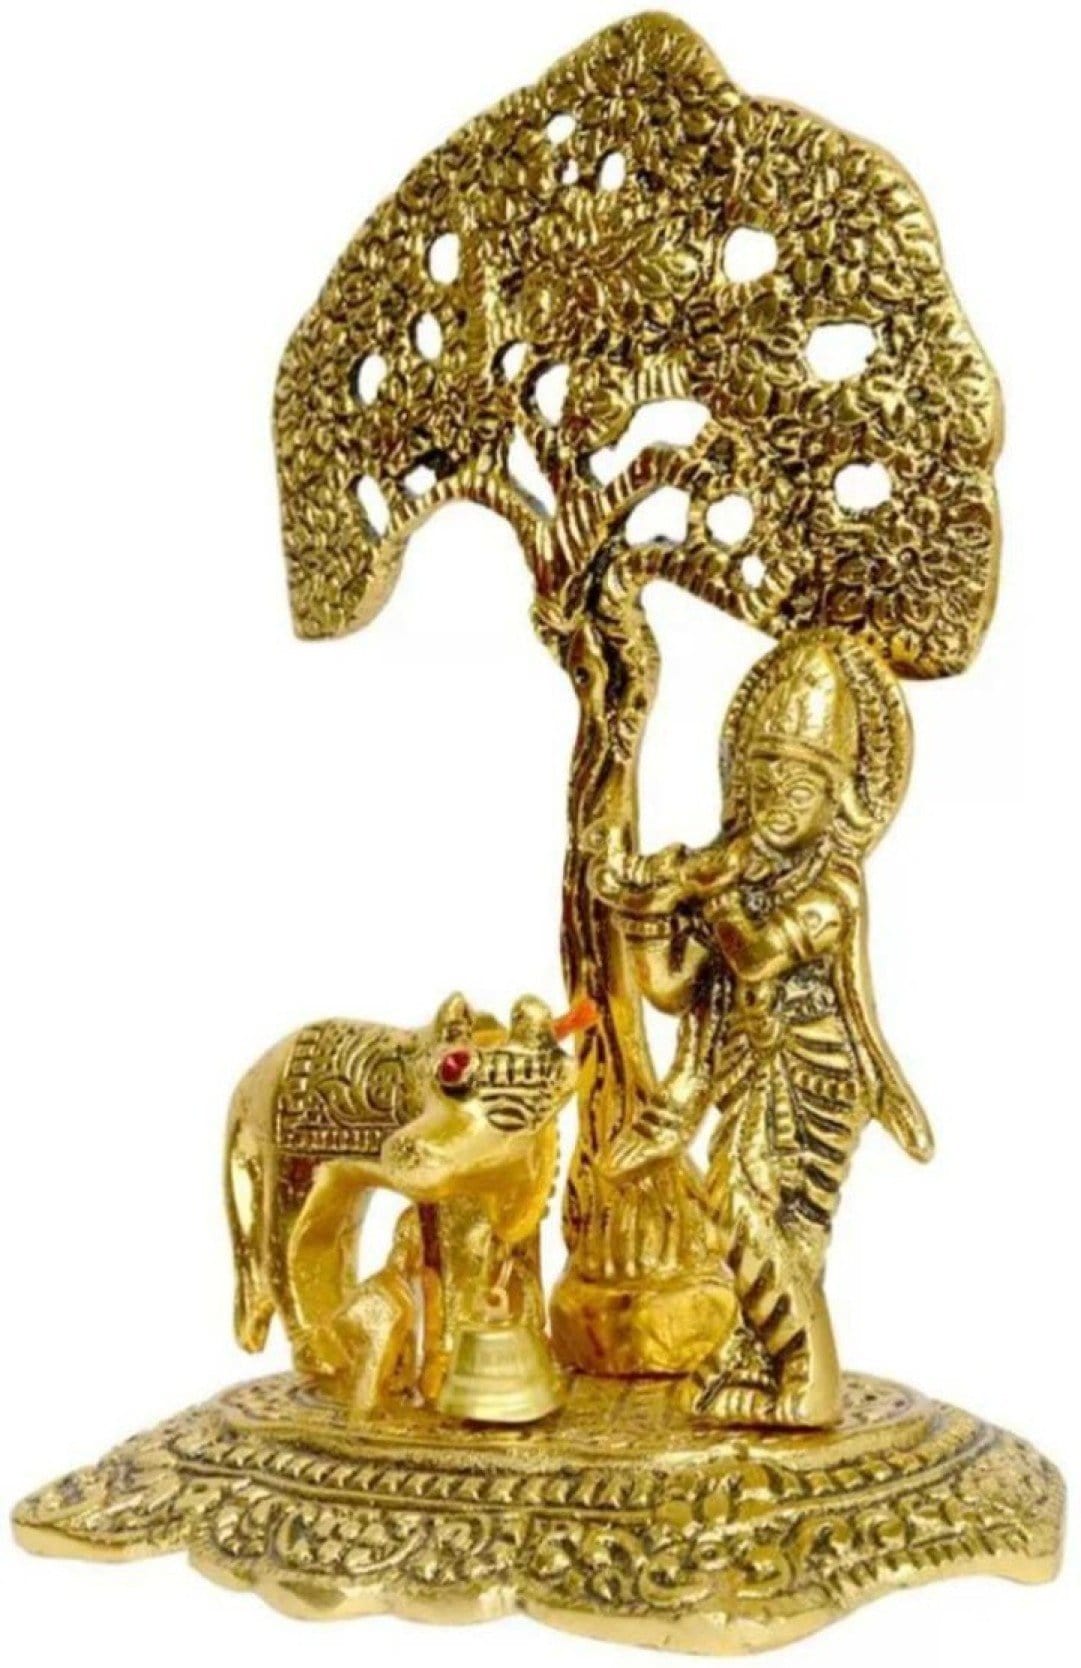 New Jaipur Handicraft Brass Showpiece Gold / Standard / Lord Krishna New Jaipur Handicraft Metal Krishna with Calf Under Tree 🌴 statue☀📿 / God Statue👼 / Lord Krishna Idols 🛐 / Decorative Showpiece / Gifting Showpiece 🎁